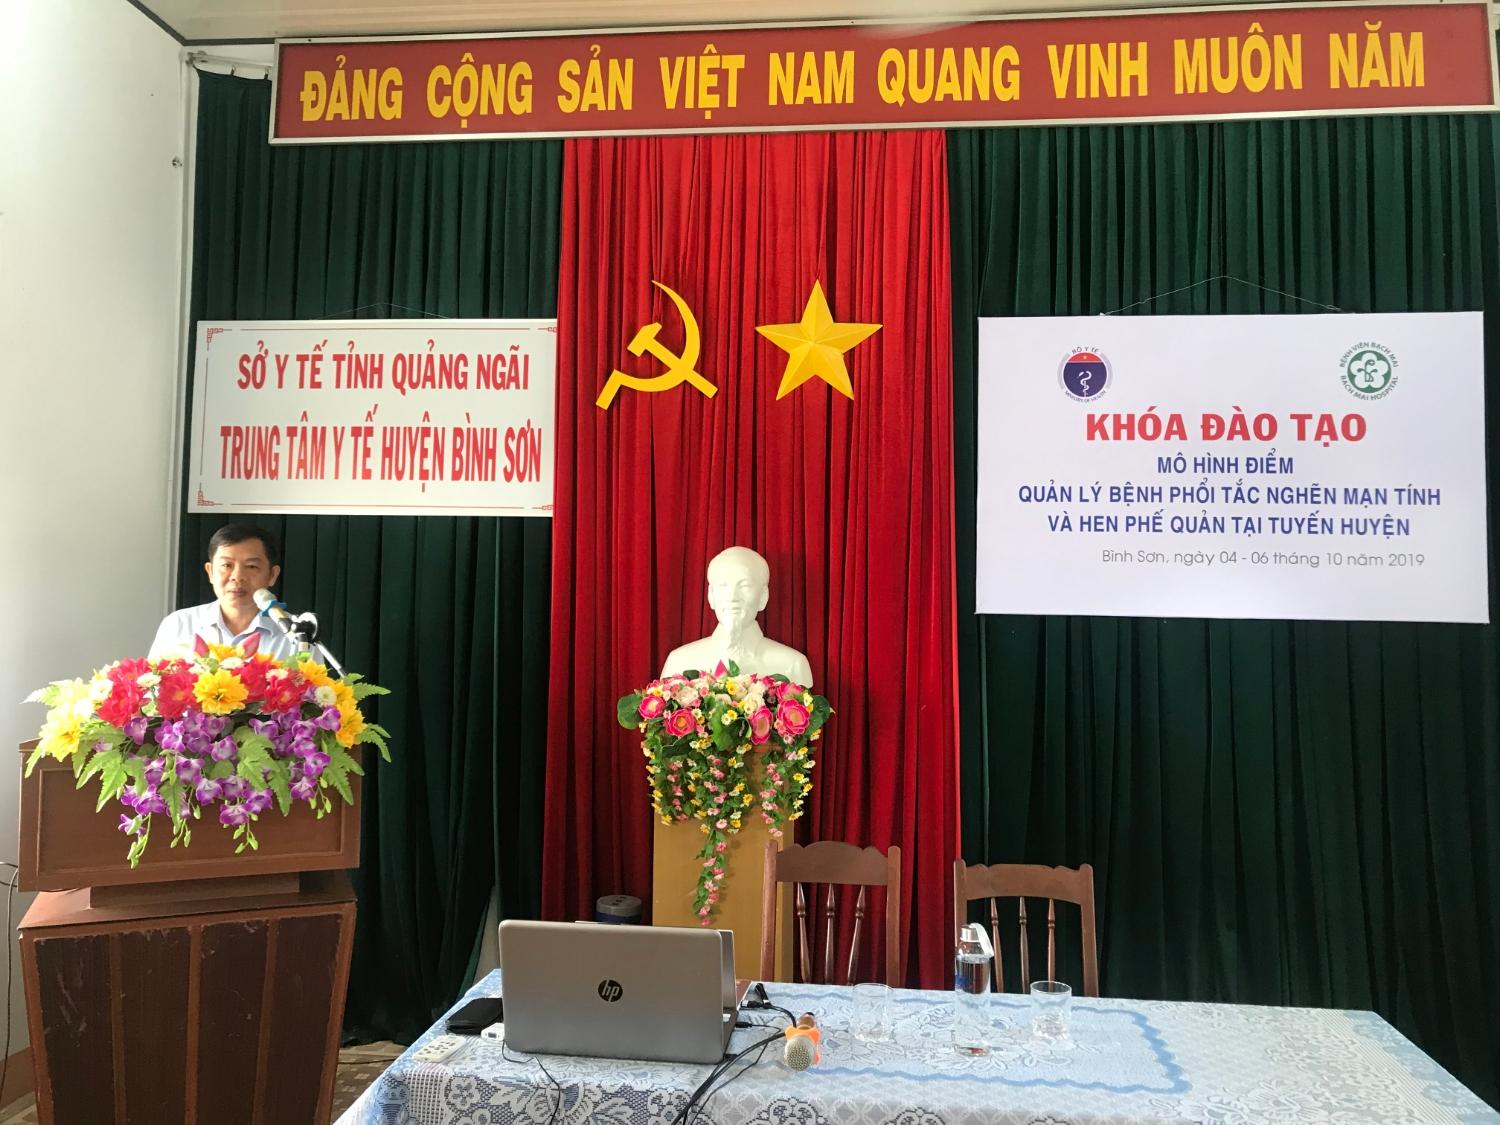 BSCKII.Võ Hùng Viễn - Giám đốc Trung tâm Y tế huyện Bình Sơn phát biểu khai mạc khóa đào tạo